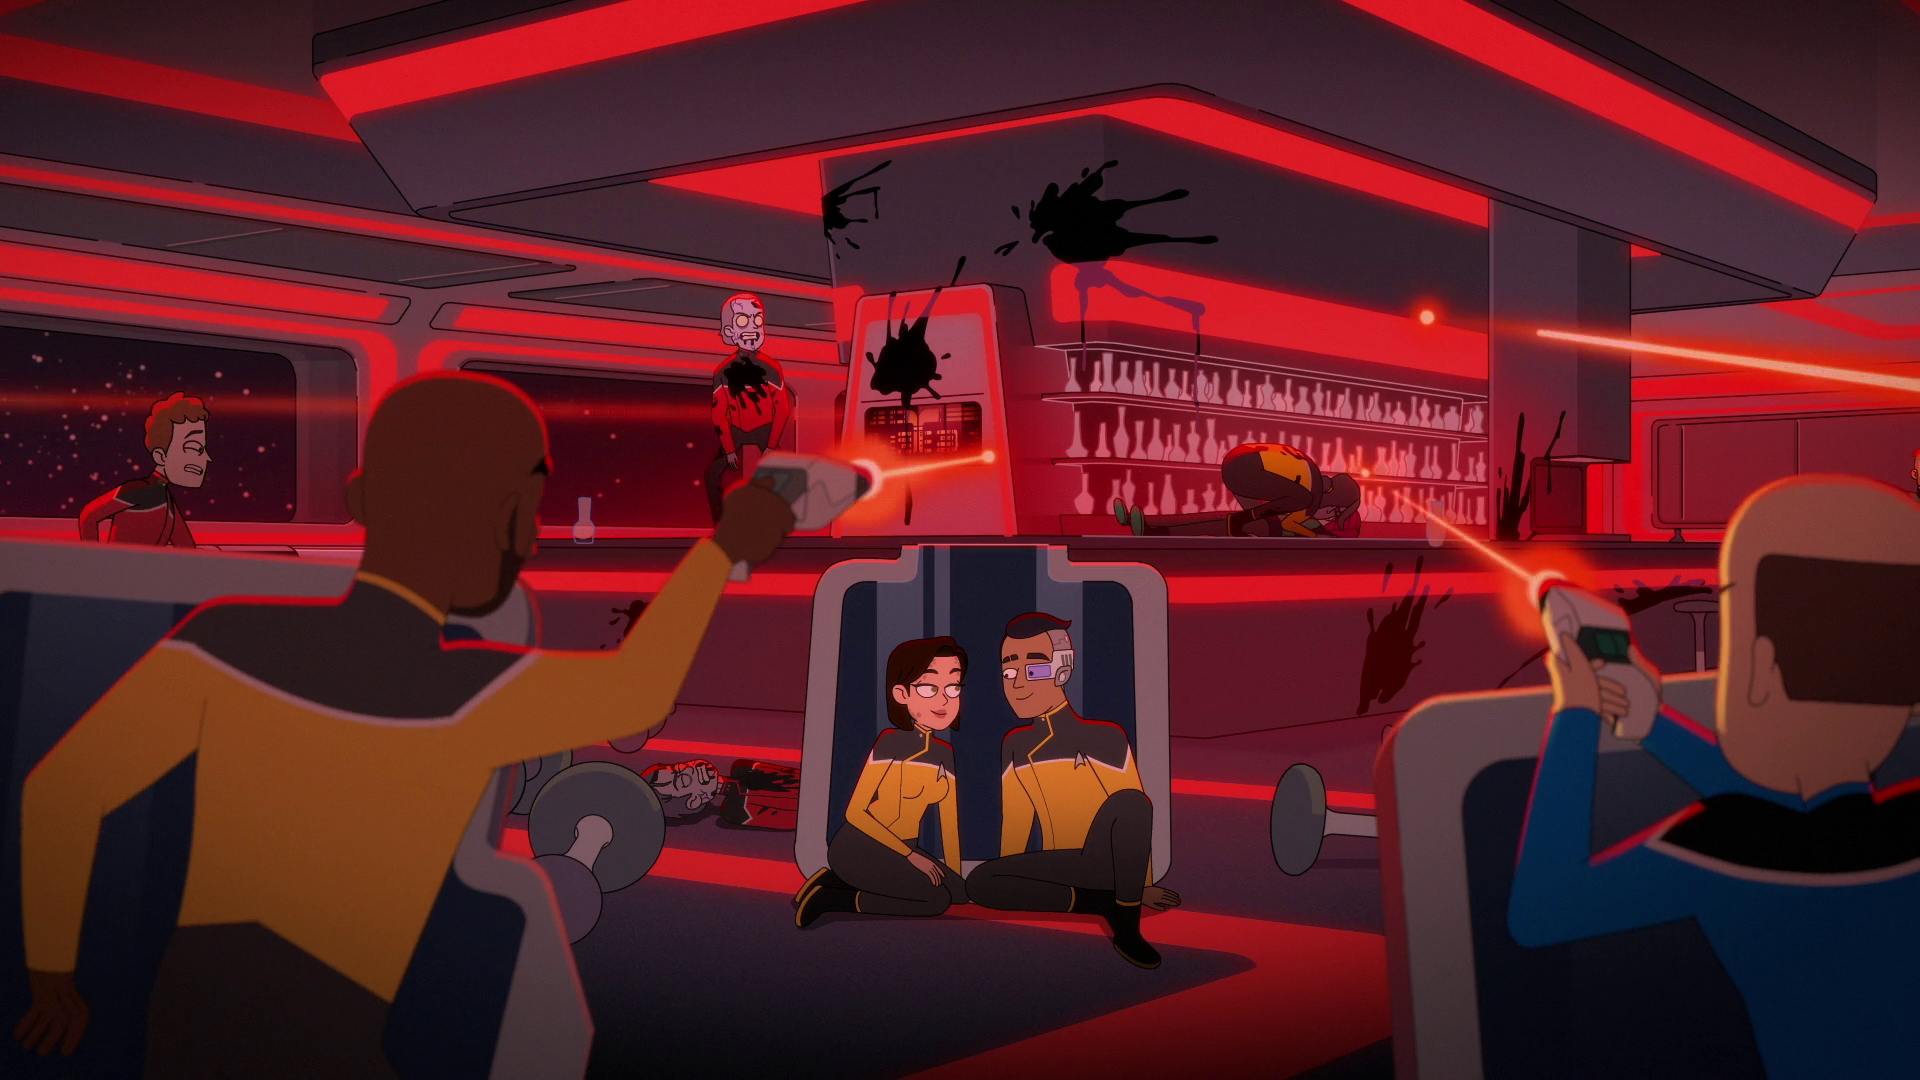 Zatímco má praporčík Ruherford rande v baru, u prvního důstojníka propukne nákaza a začne infikovat posádku.